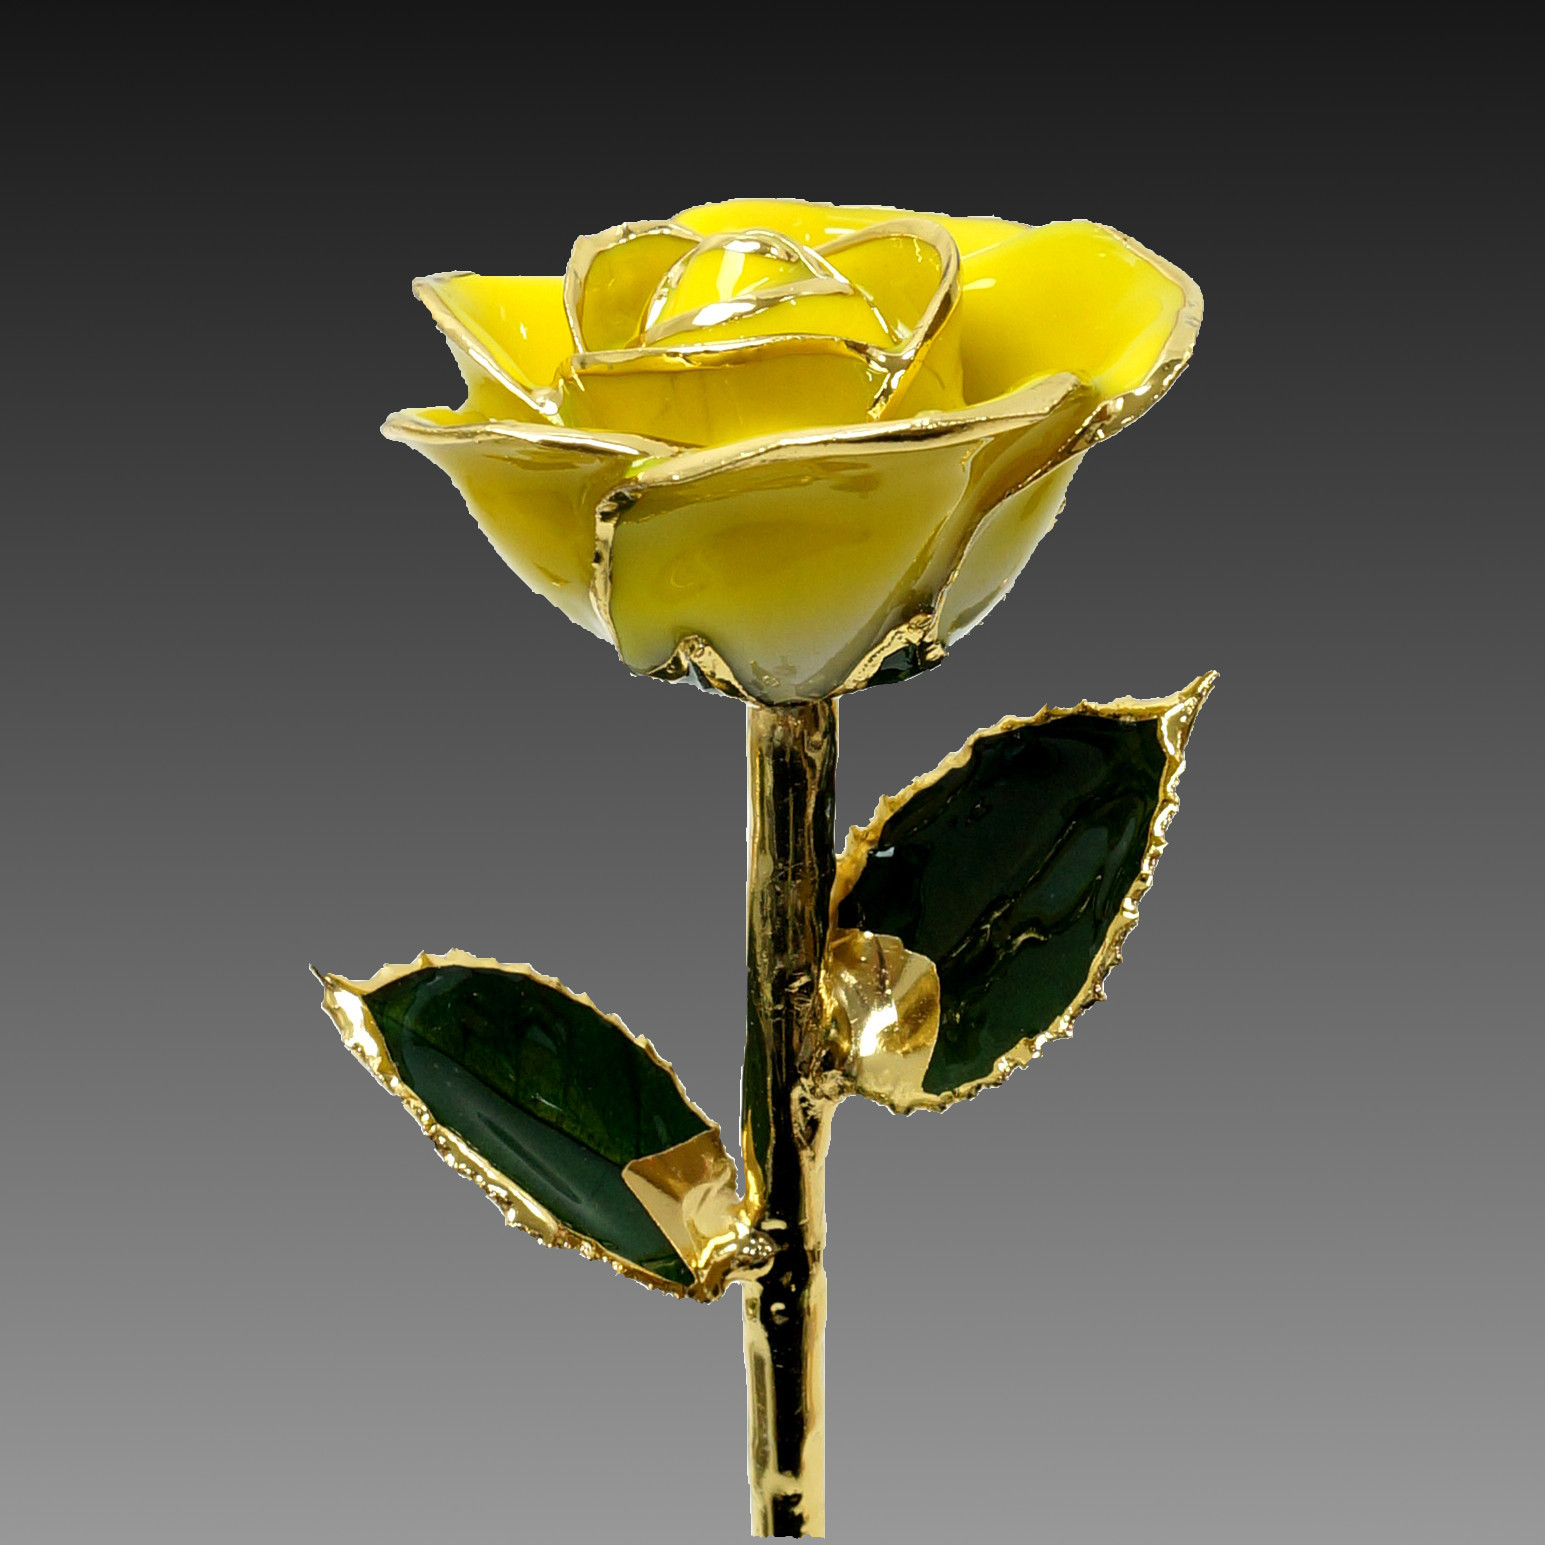 ギフトやブライダル 誕生日など特別な日に金の花など珍しい花やジェルキャンドルとフルオーダーリングのサプライズプレゼント Florrealカラーローズ イエロー ギフトやブライダル 誕生日などの特別な日に金の花などの珍しいプレゼント Florreal